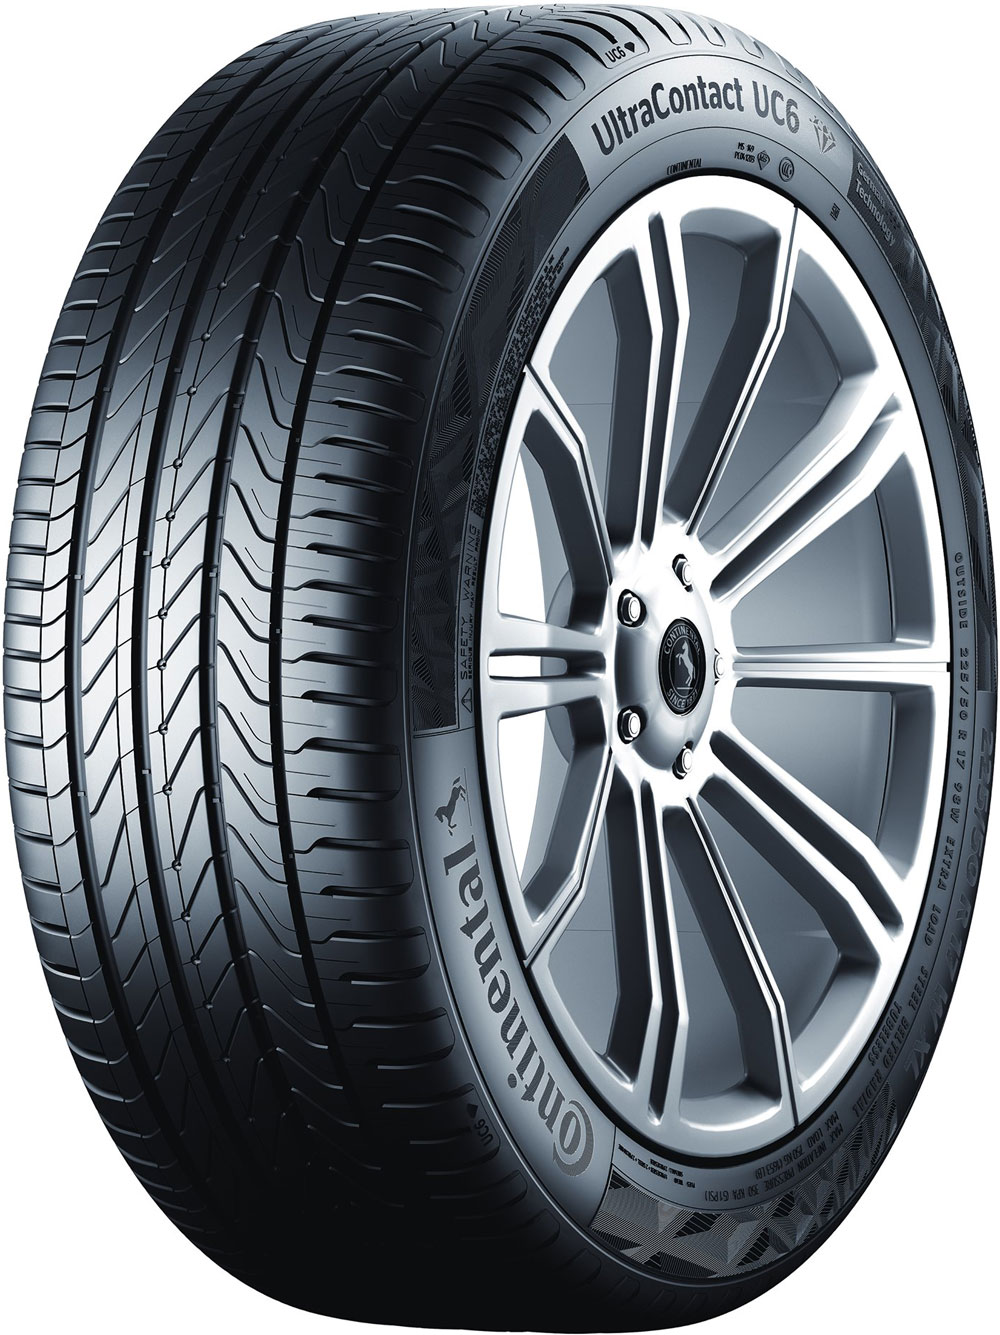 Автомобилни гуми CONTINENTAL UCXLFR XL 195/55 R16 91T